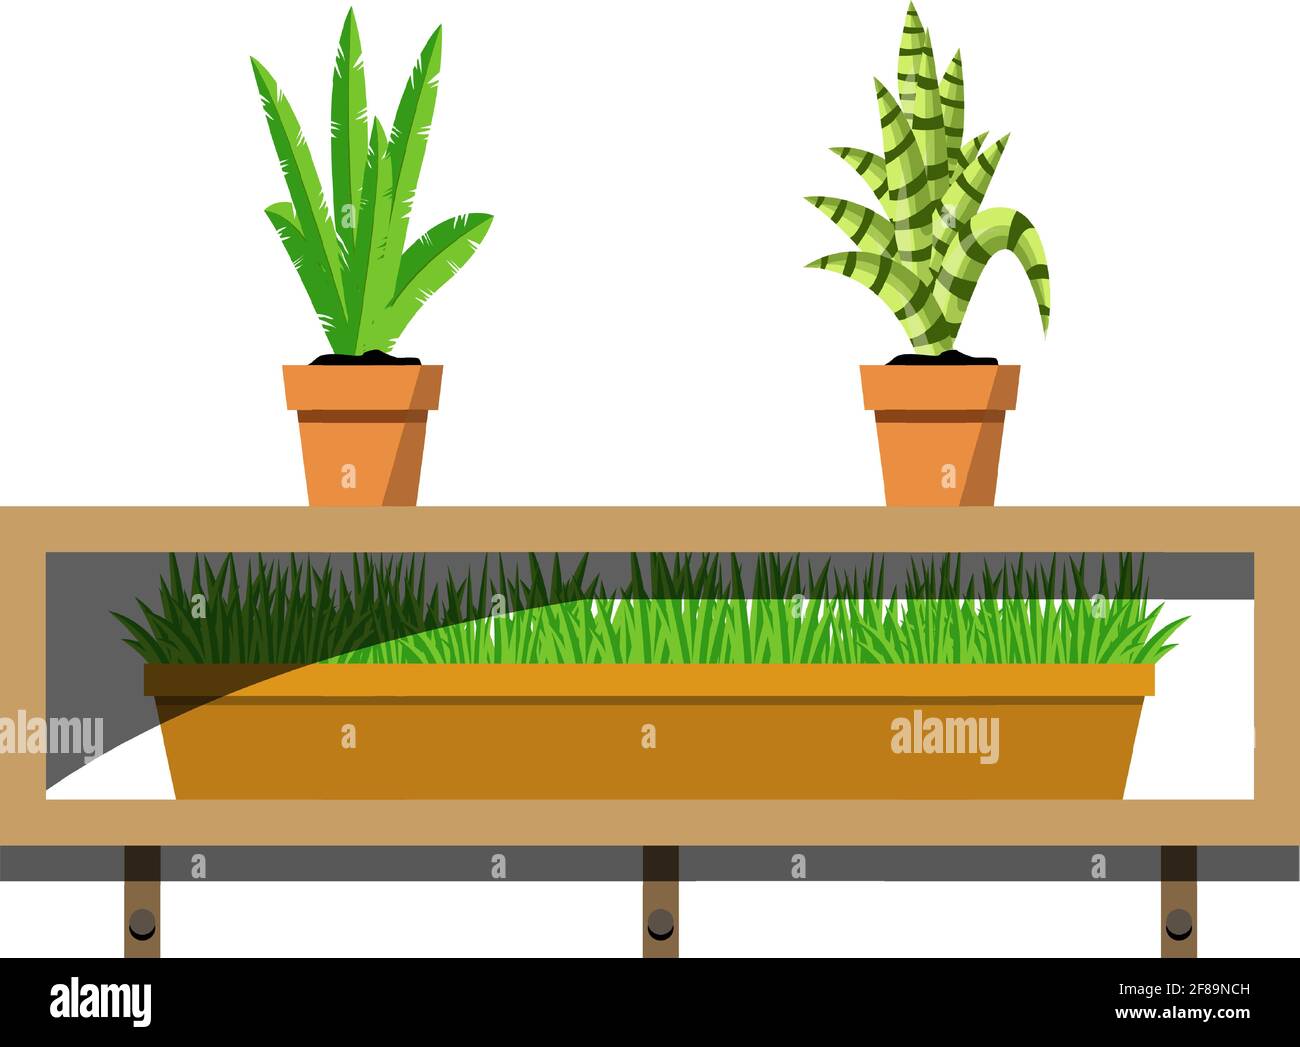 Estantes de madera con plantas en macetas en macetas de cerámica. Flores de Aloe y de la palma joven en el pote y hierba verde en un recipiente en los estantes. Diseño interior Ilustración del Vector